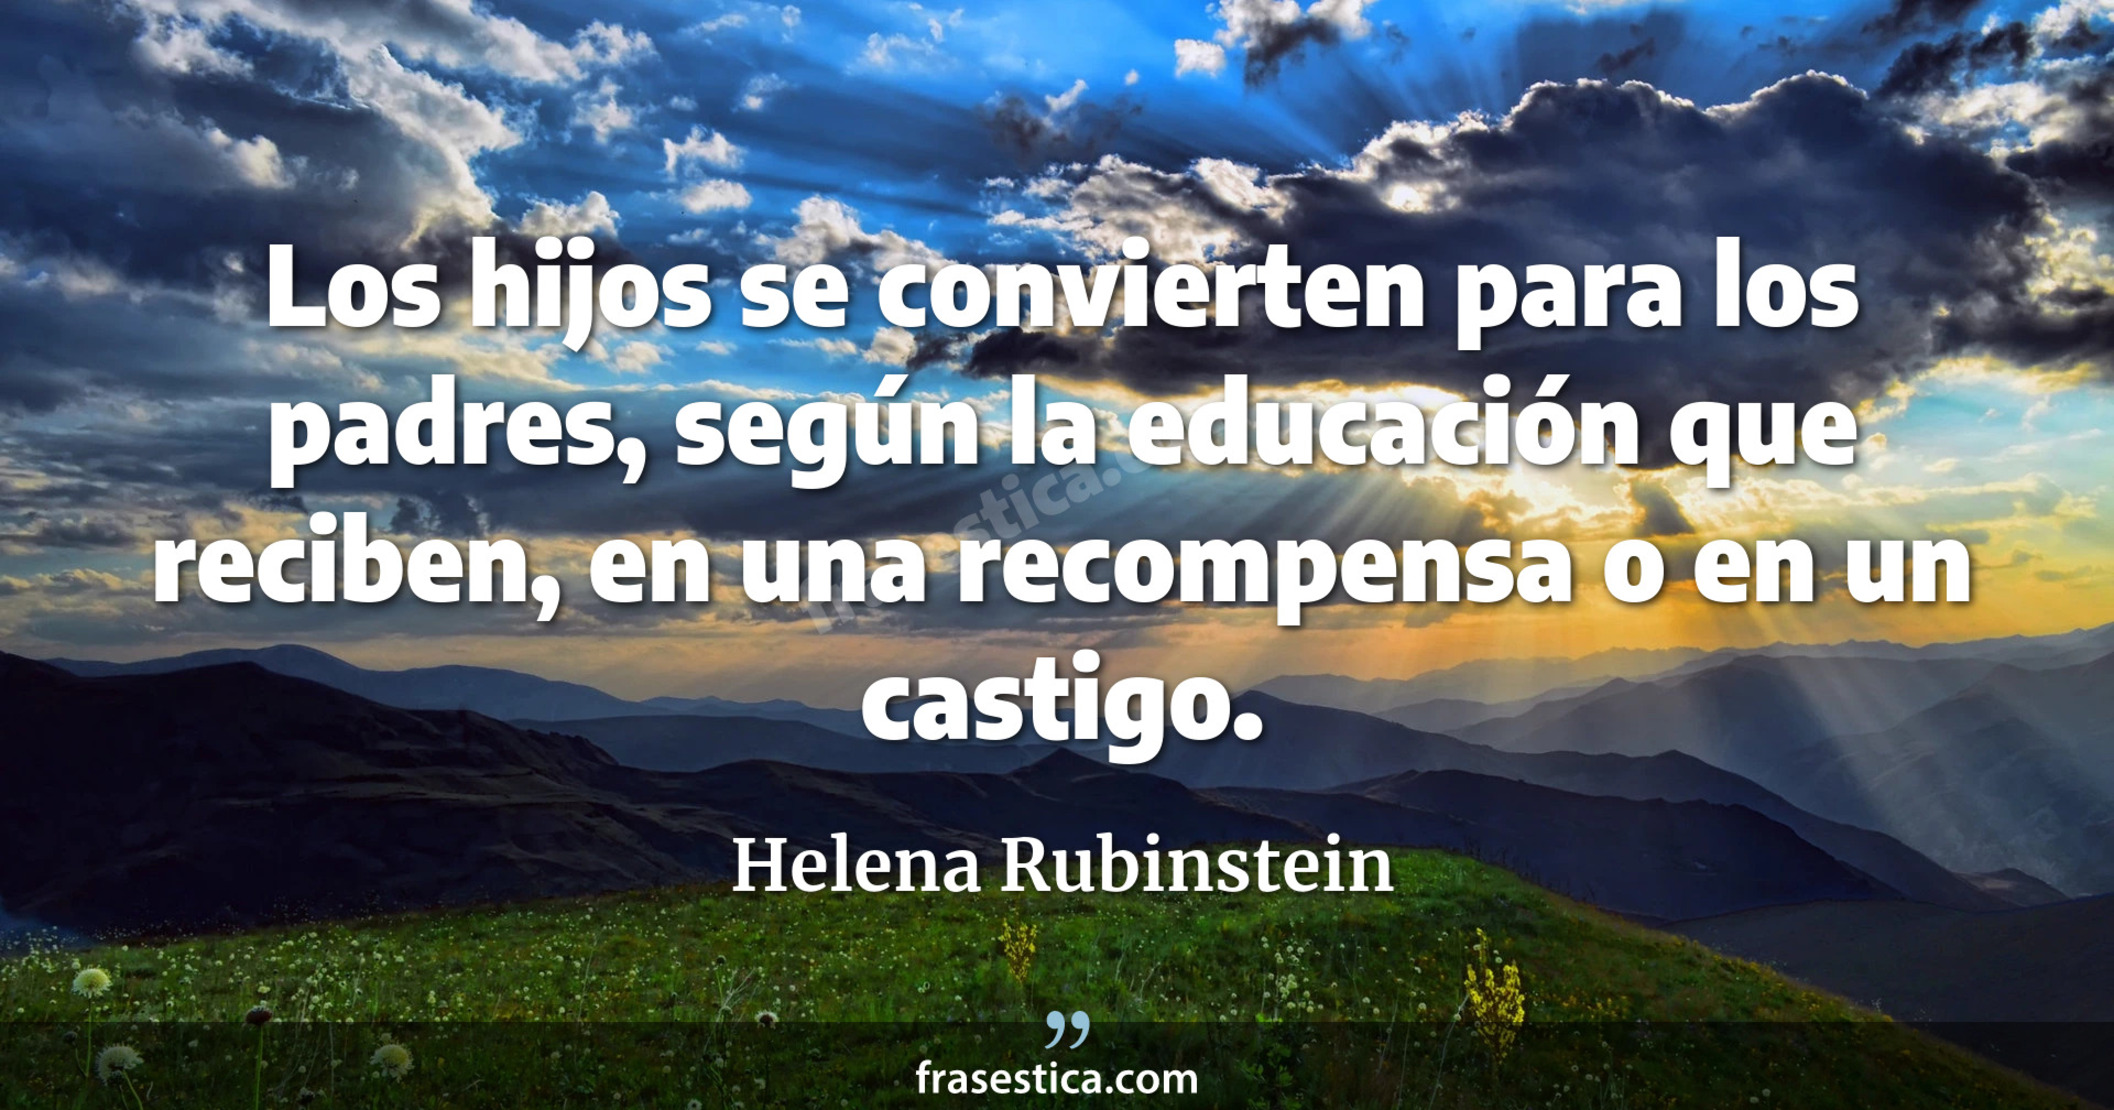 Los hijos se convierten para los padres, según la educación que reciben, en una recompensa o en un castigo. - Helena Rubinstein